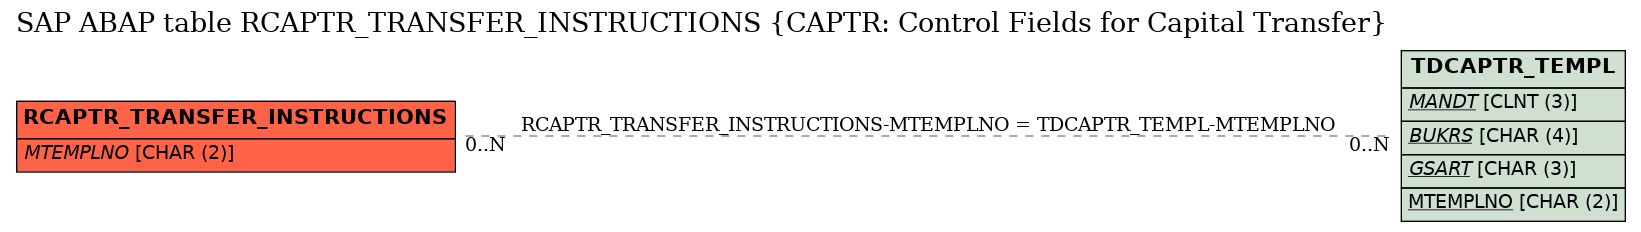 E-R Diagram for table RCAPTR_TRANSFER_INSTRUCTIONS (CAPTR: Control Fields for Capital Transfer)